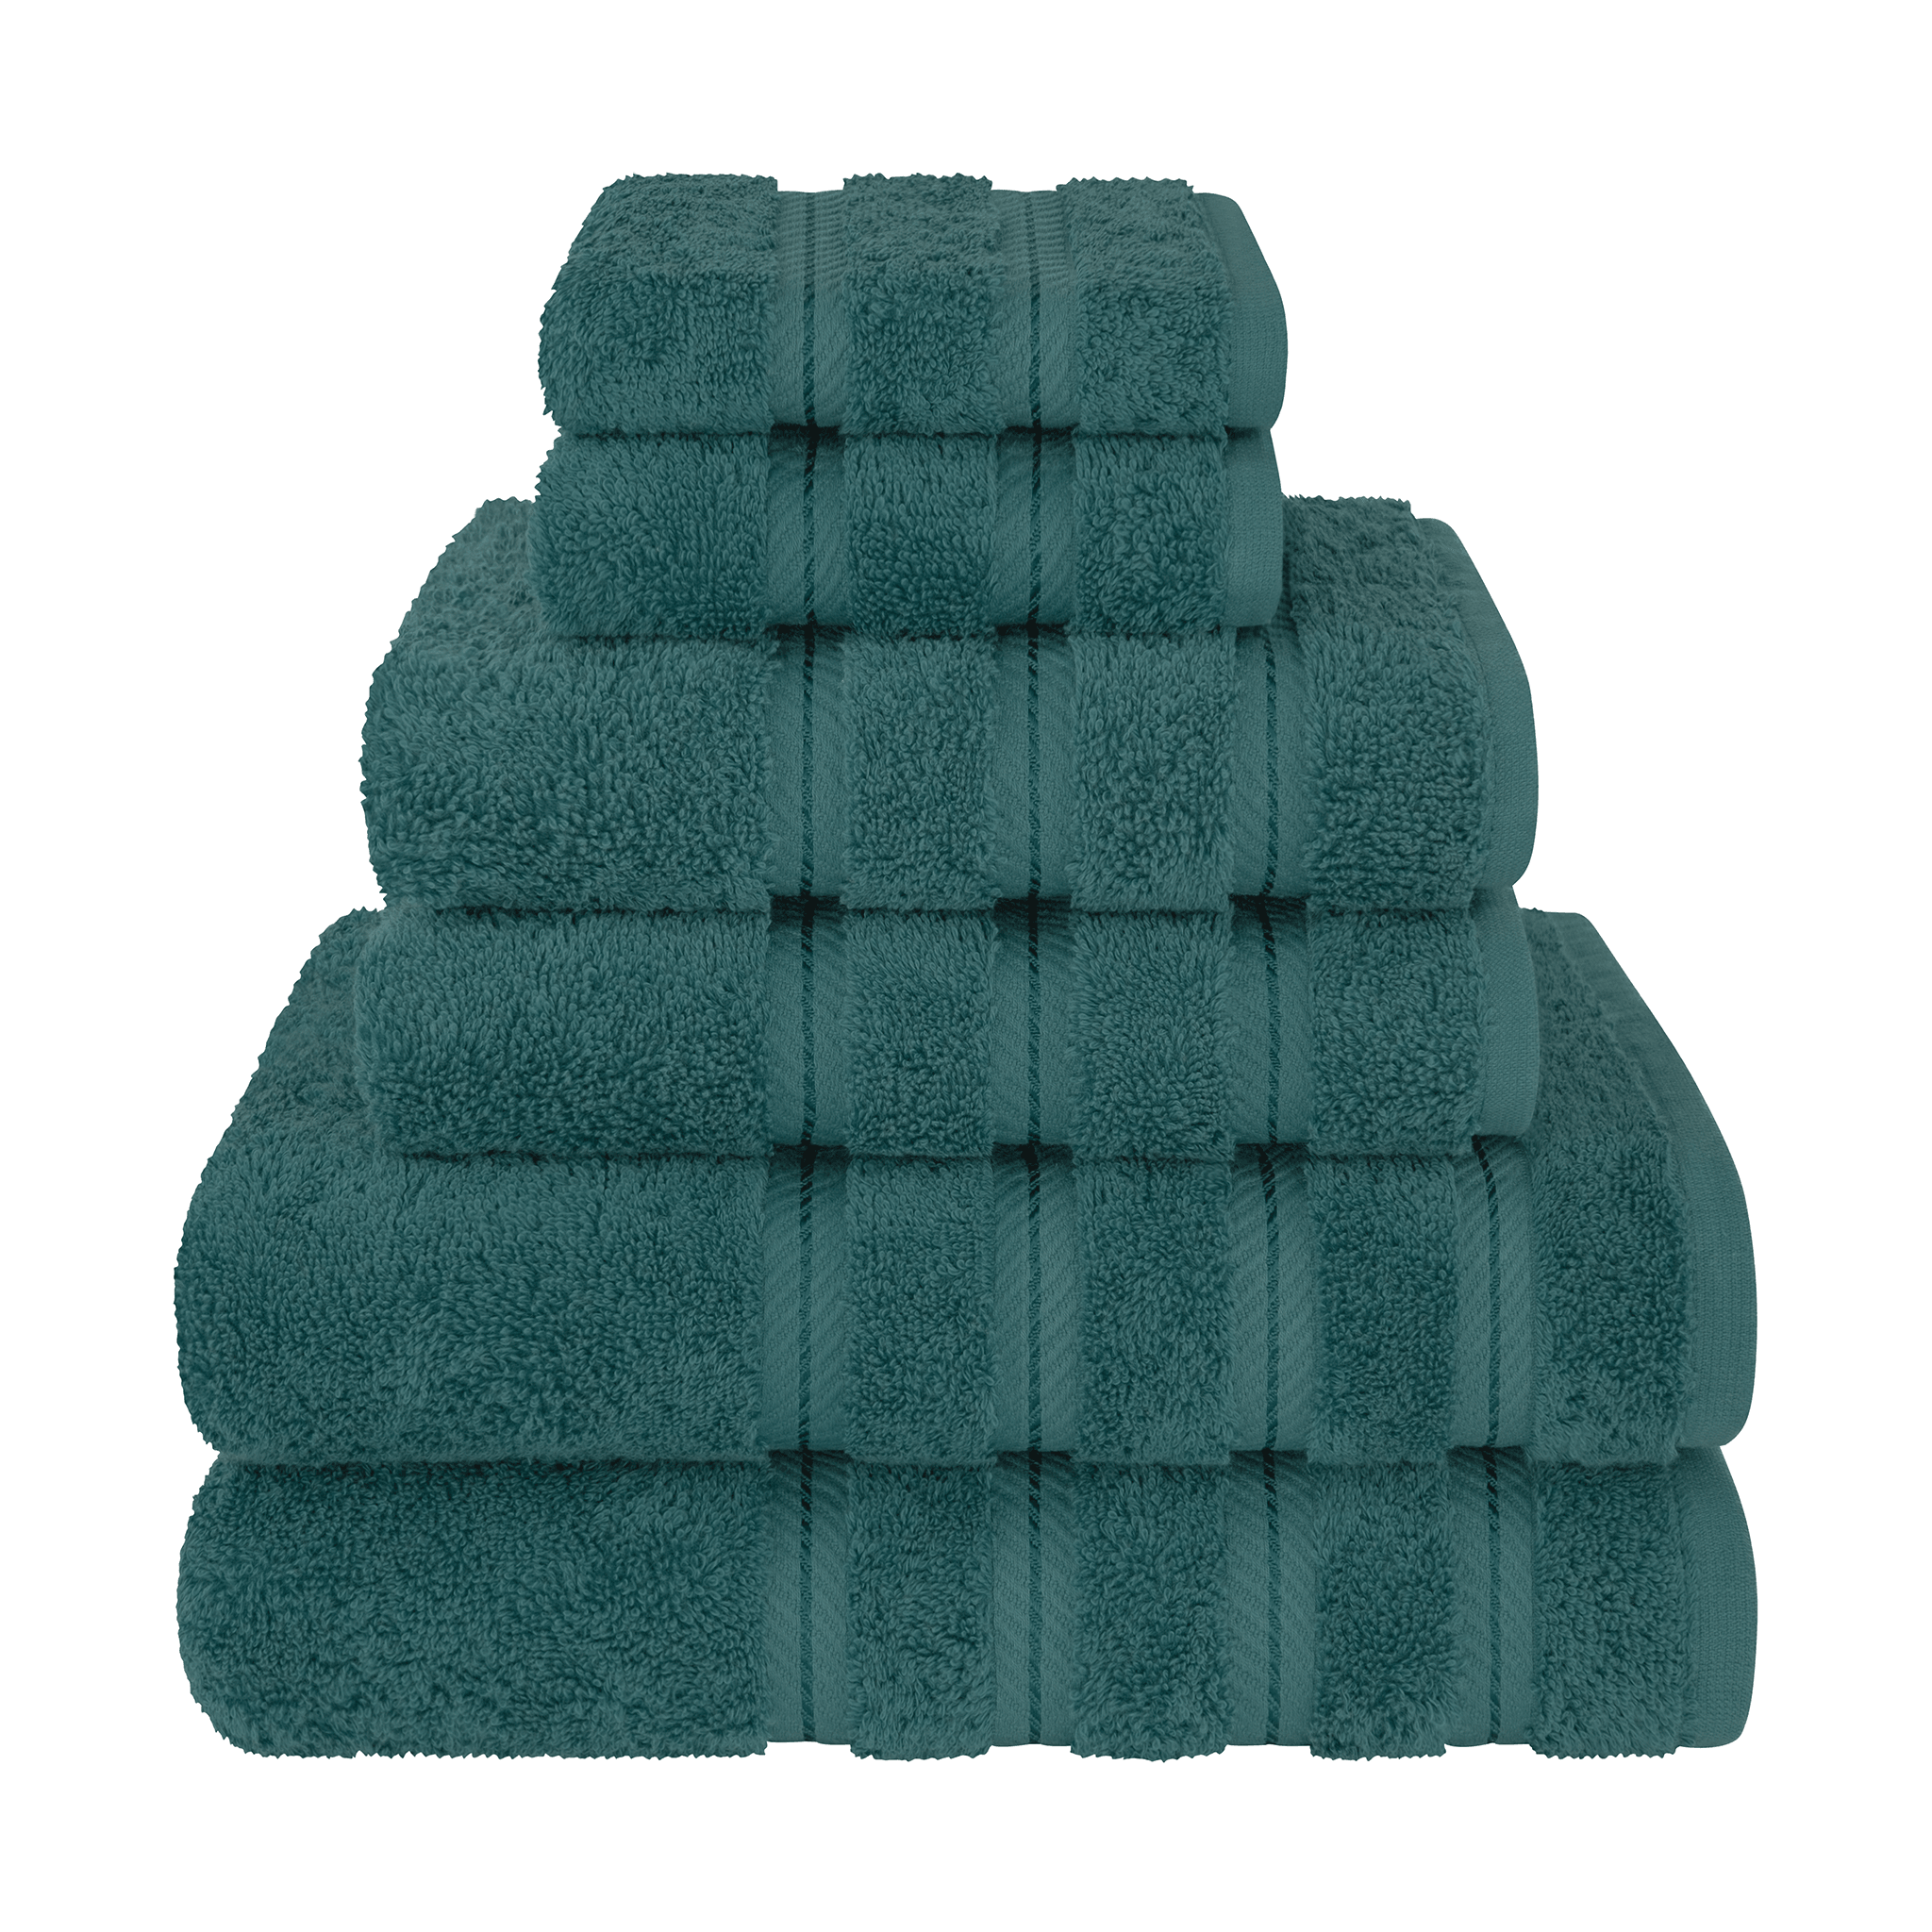 American Soft Linen - 6 Piece Turkish Cotton Bath Towel Set - Colonial-Blue - 1